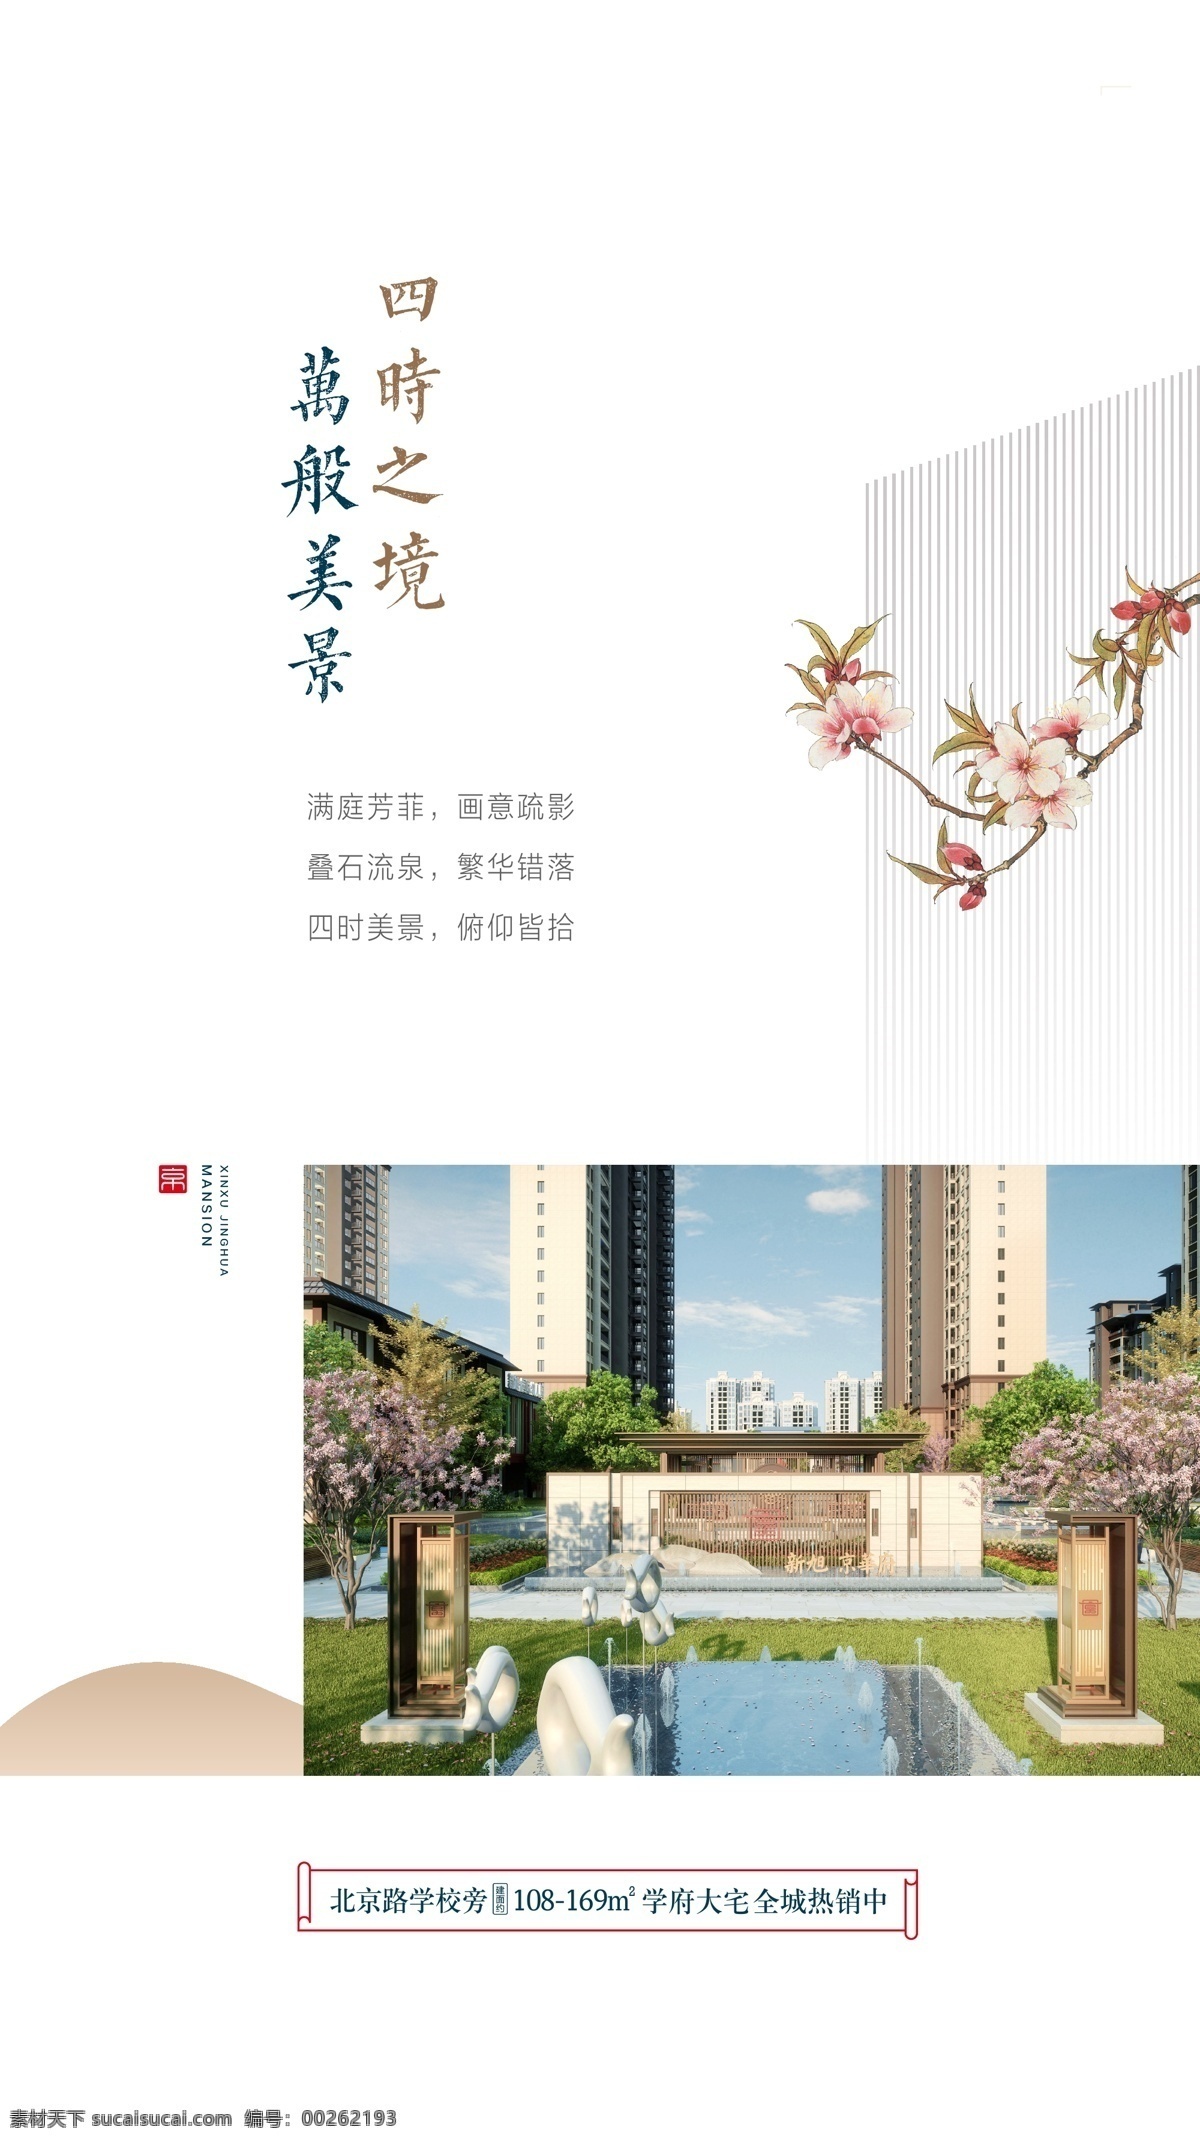 中式 地产 园林 微 信稿 微信稿 新中式 住宅 学区 新古典 微信单图 单图 地产广告